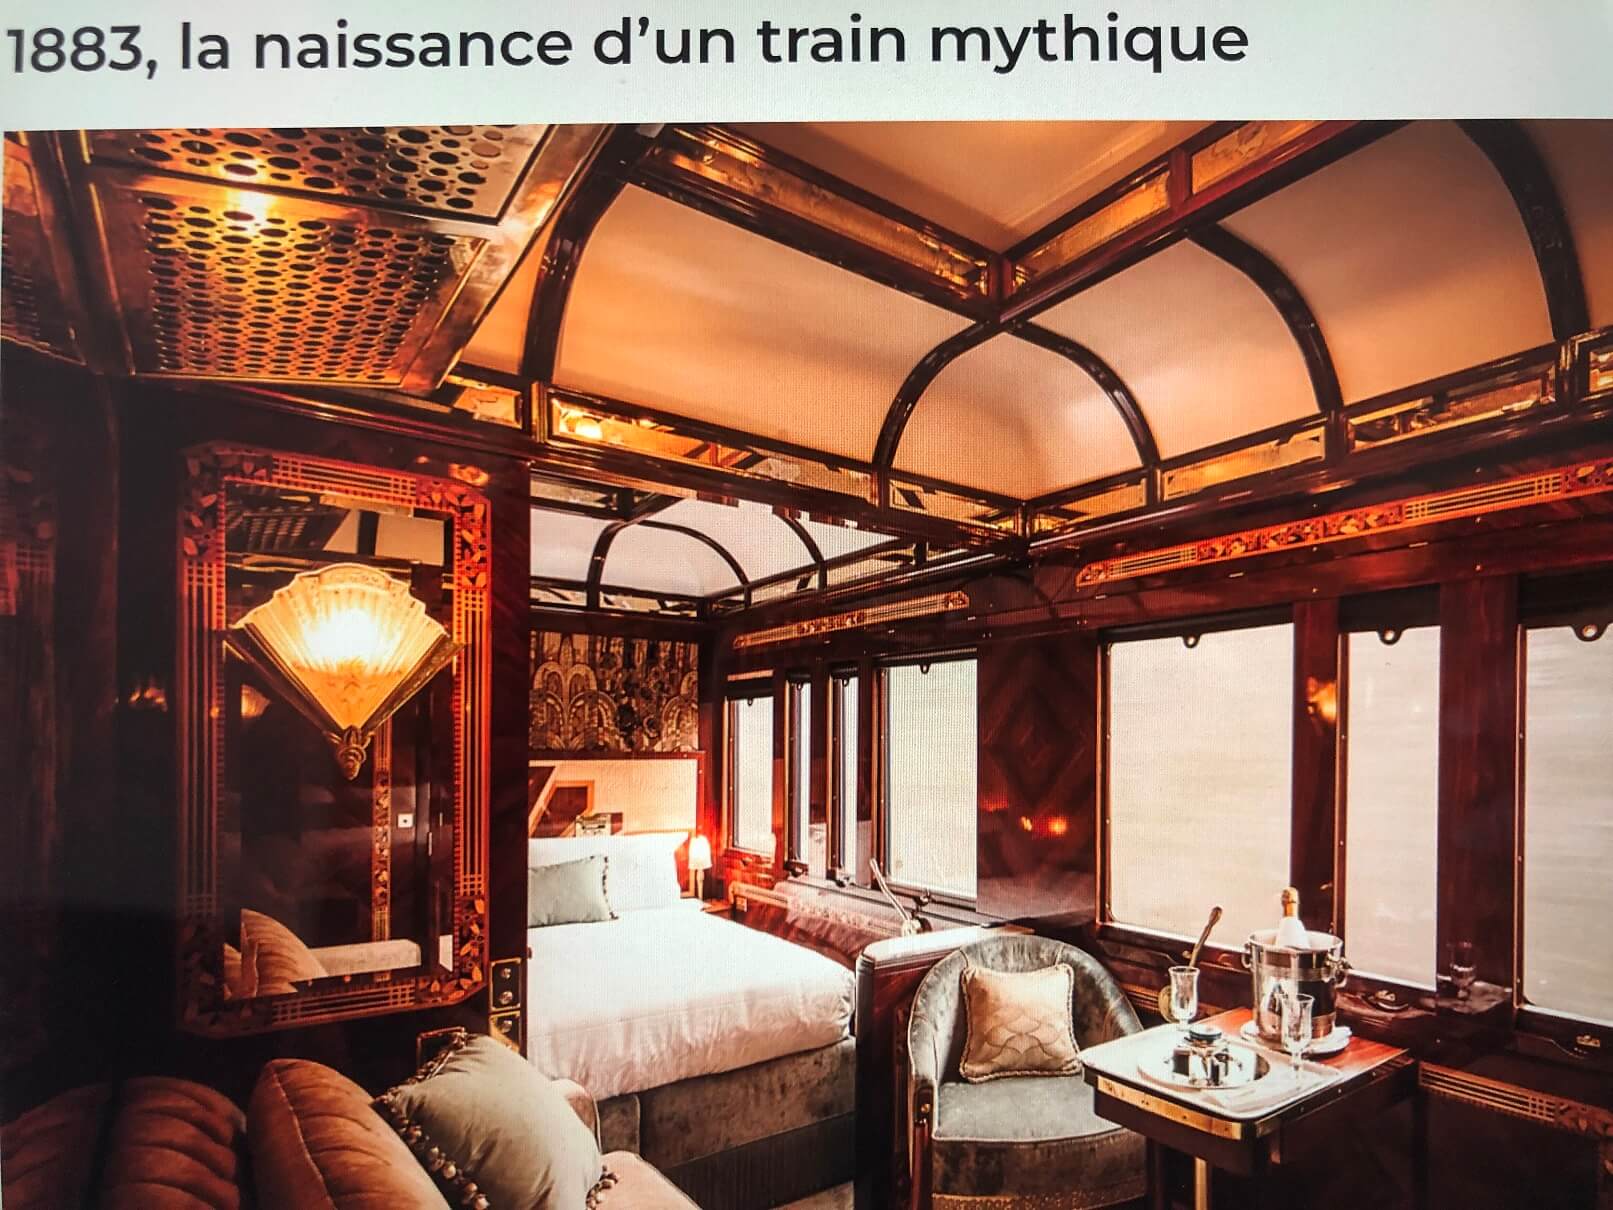 パリ最新情報「伝説の豪華列車『オリエント急行』、パリ・ウィーン間で復活へ」